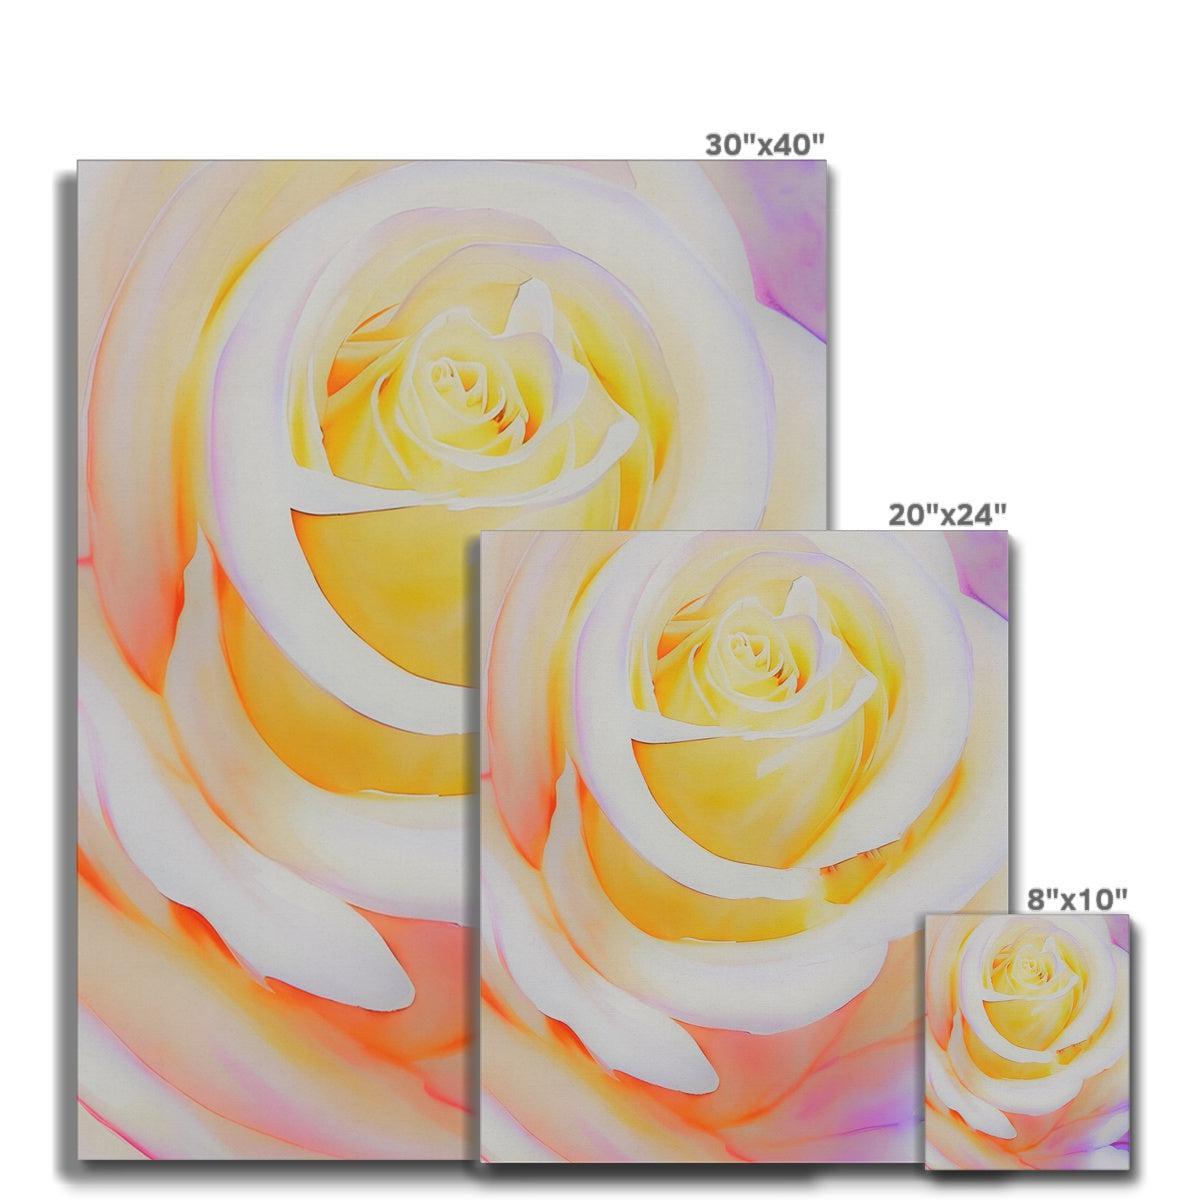 Cream Rose Canvas